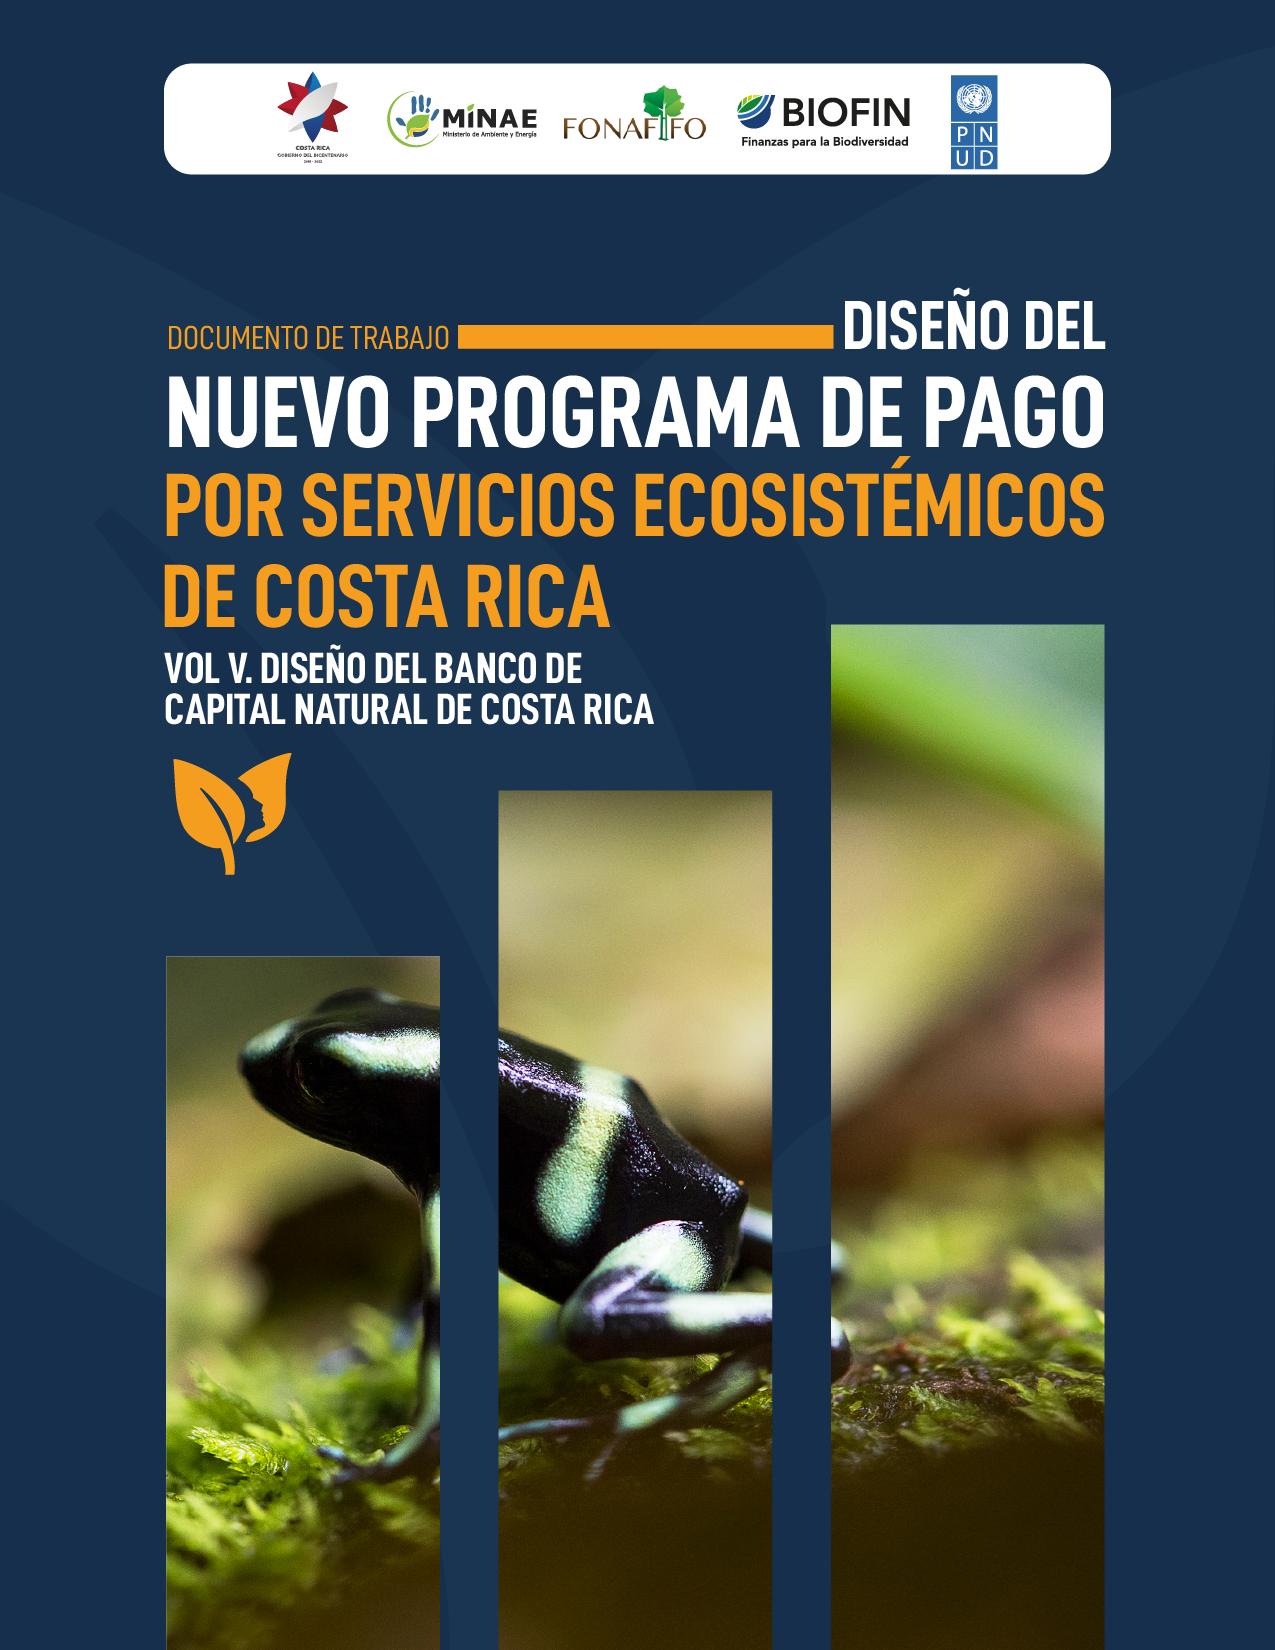 Documento de trabajo: Diseño del nuevo programa de pago por servicios ecosistémicos. VOL V: Diseño del banco de capital natural de Costa Rica